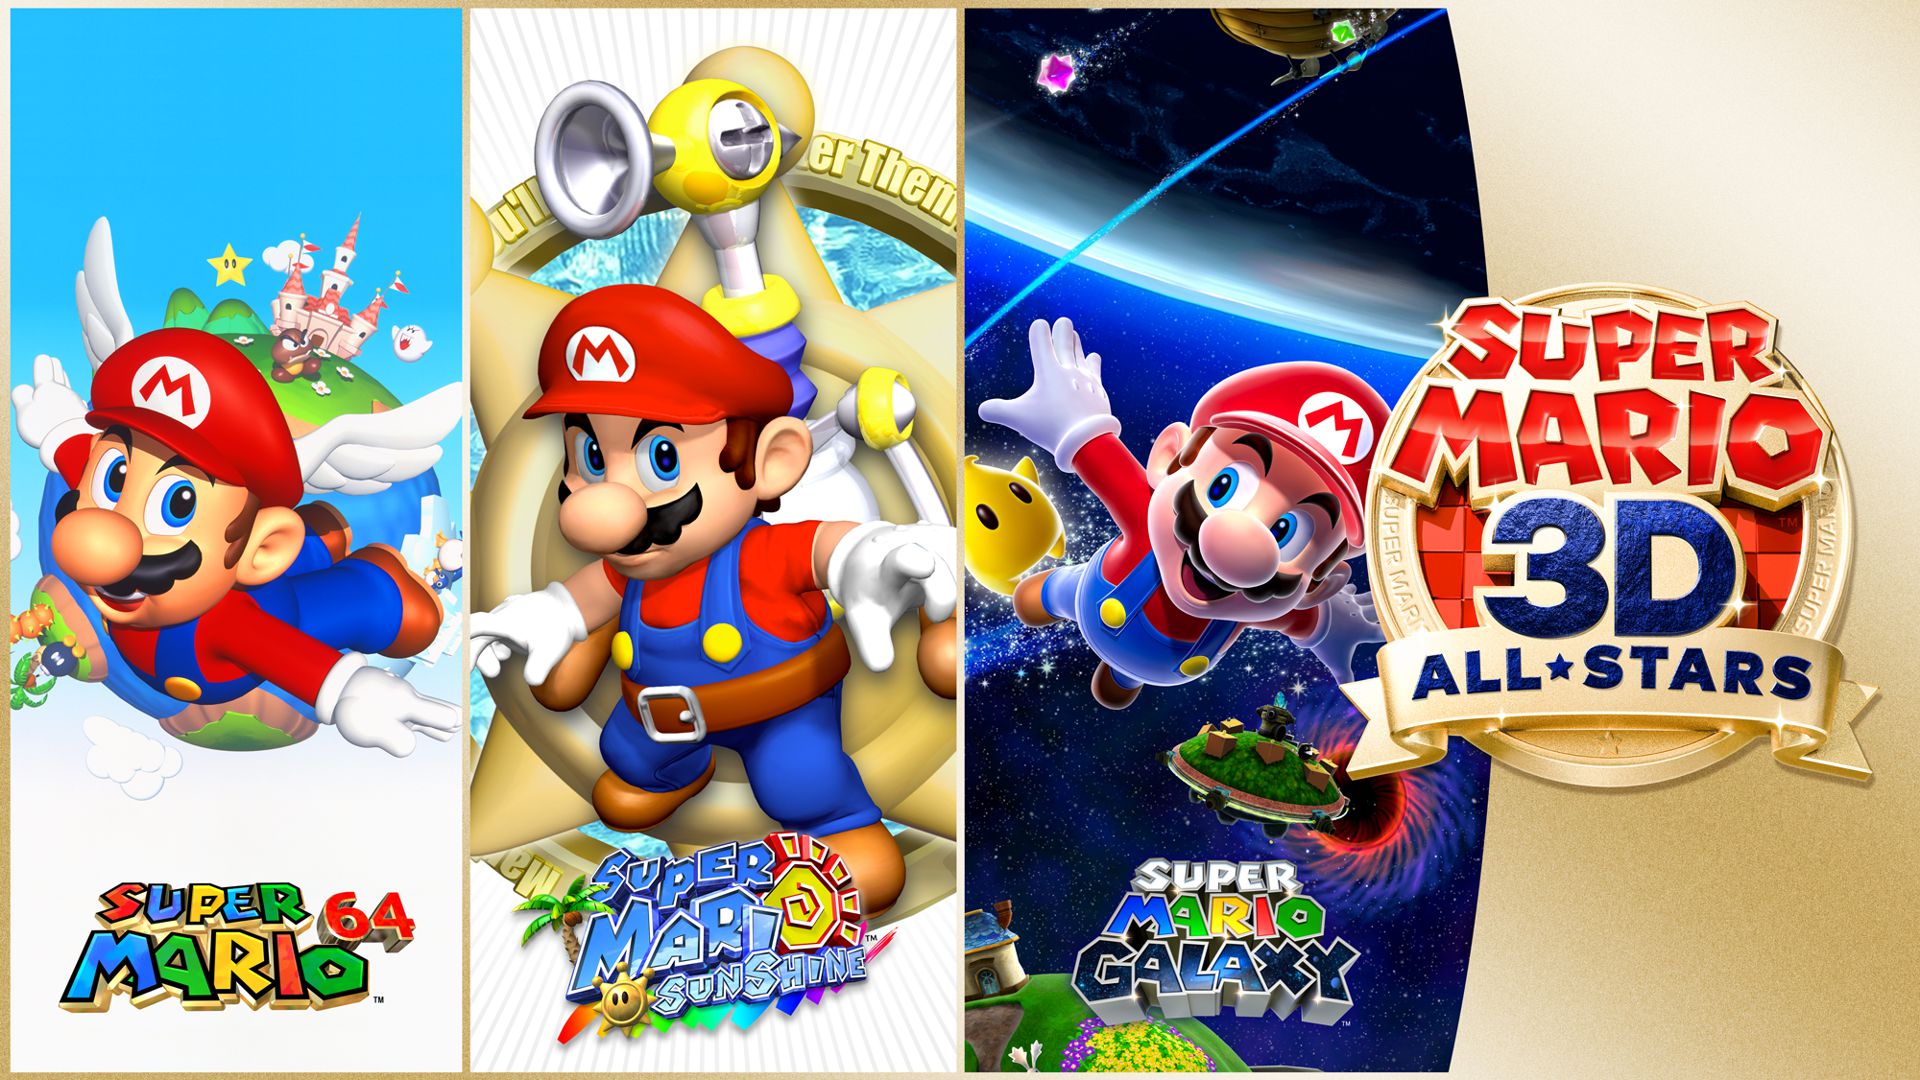 Super Mario 3D All-Stars Principal